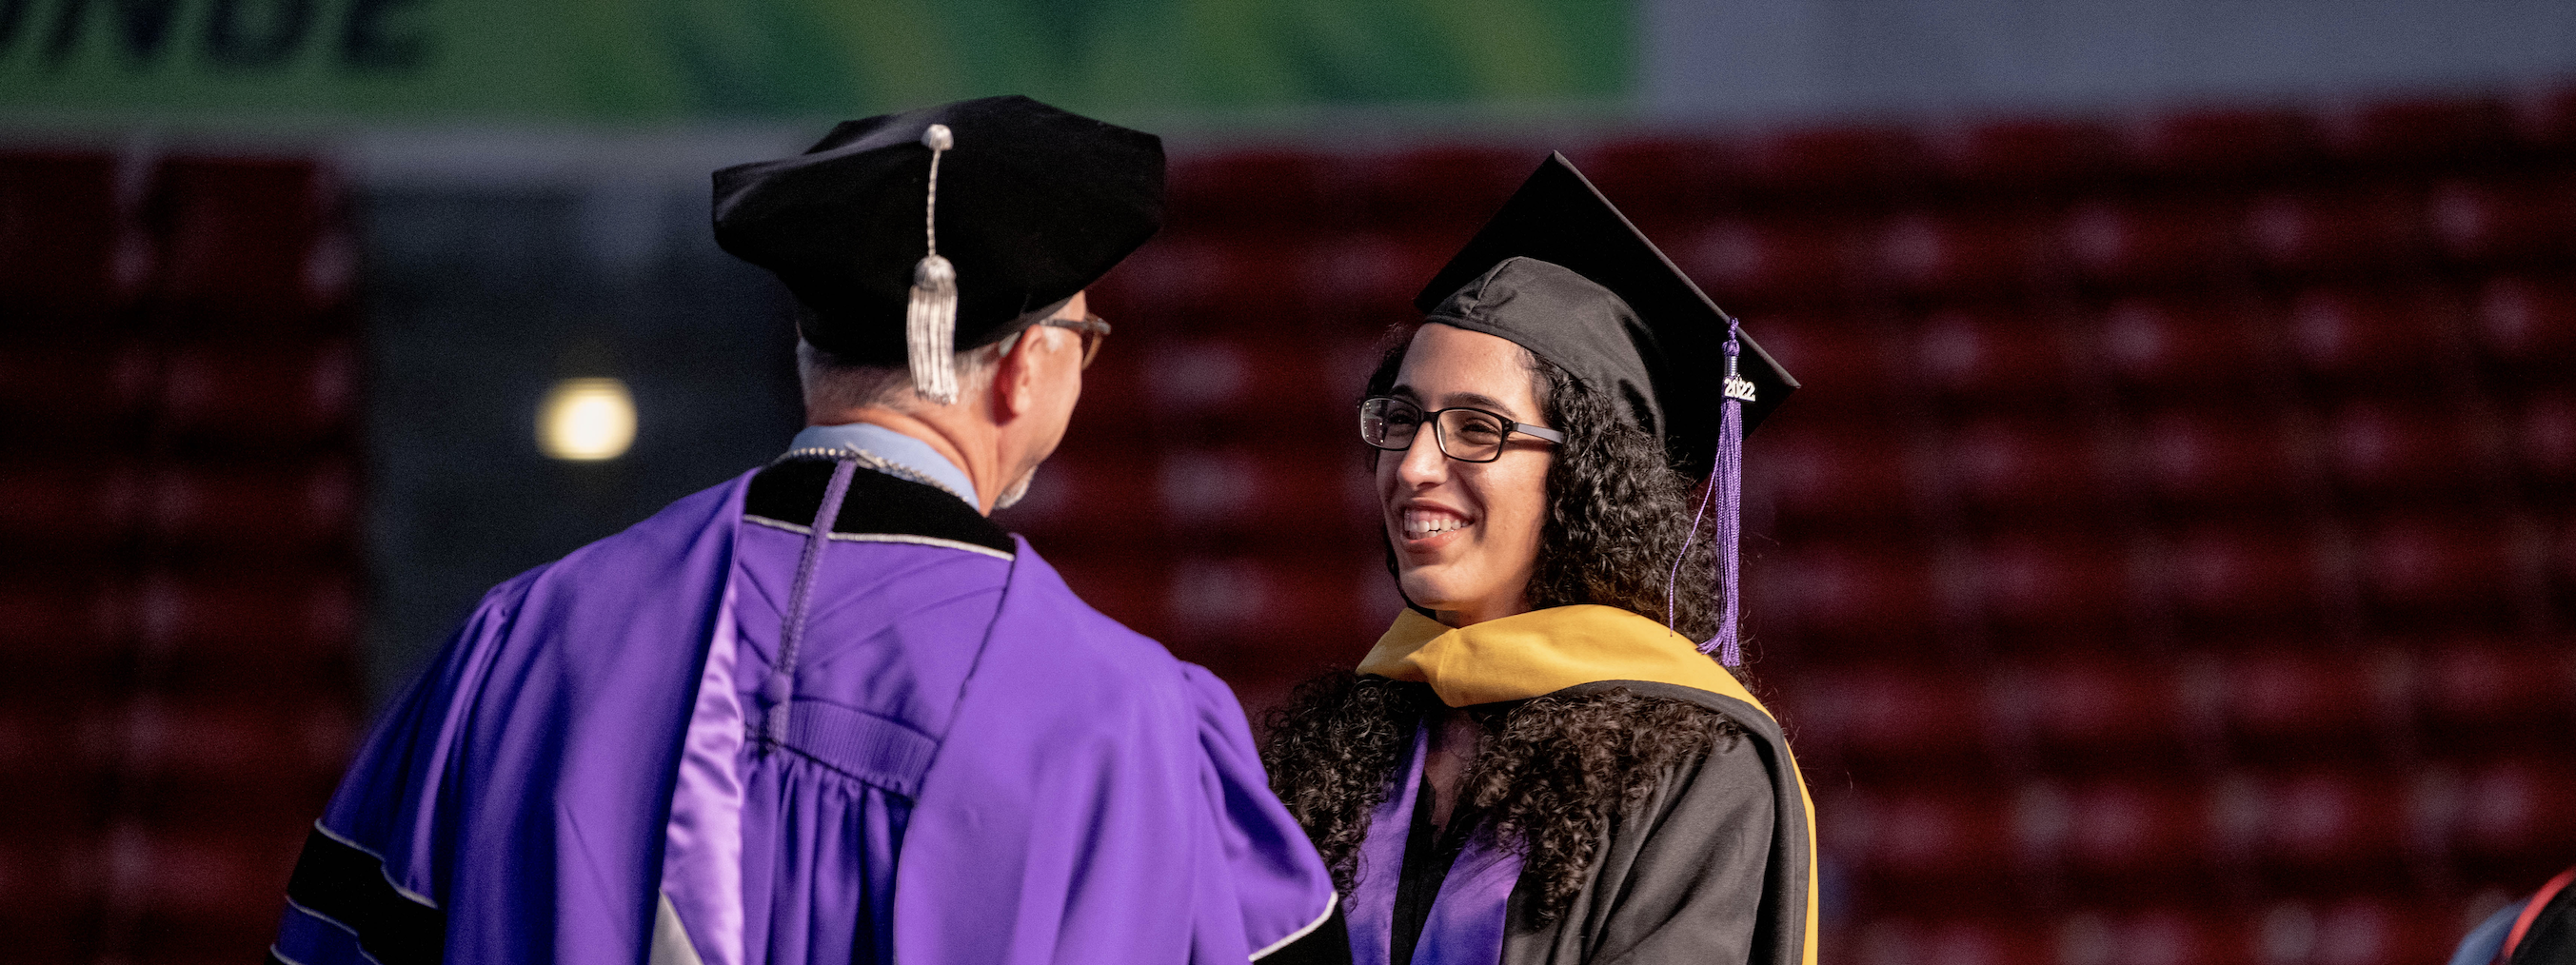 girl smiling at graduation